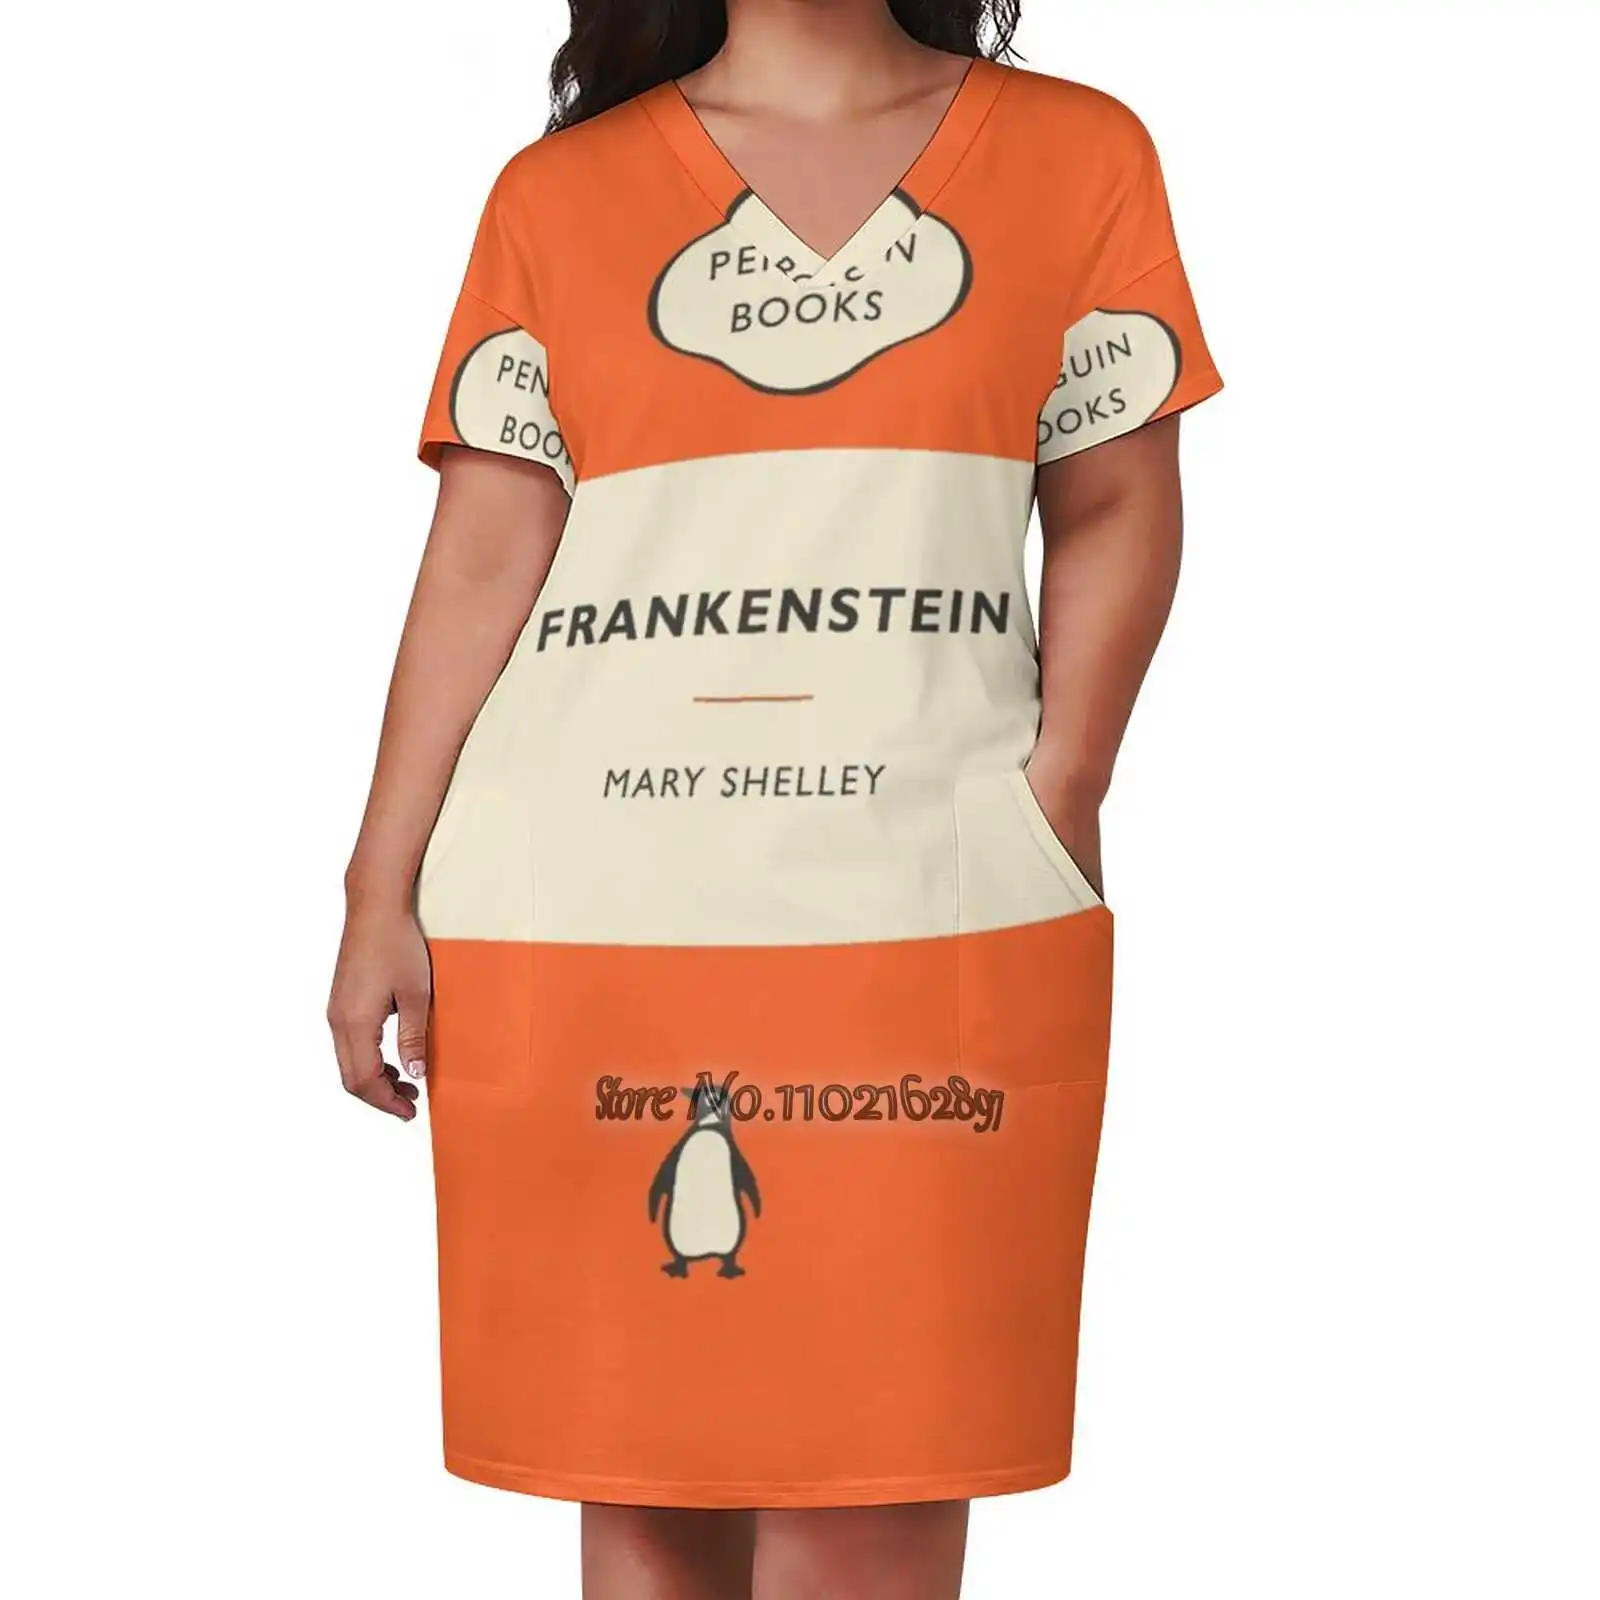 

Penguin Books Frankenstein Loose V-Neck Short Sleeve Skirt Elegant High Quality Dress Lightweight Fabric Skirt Penguin Books